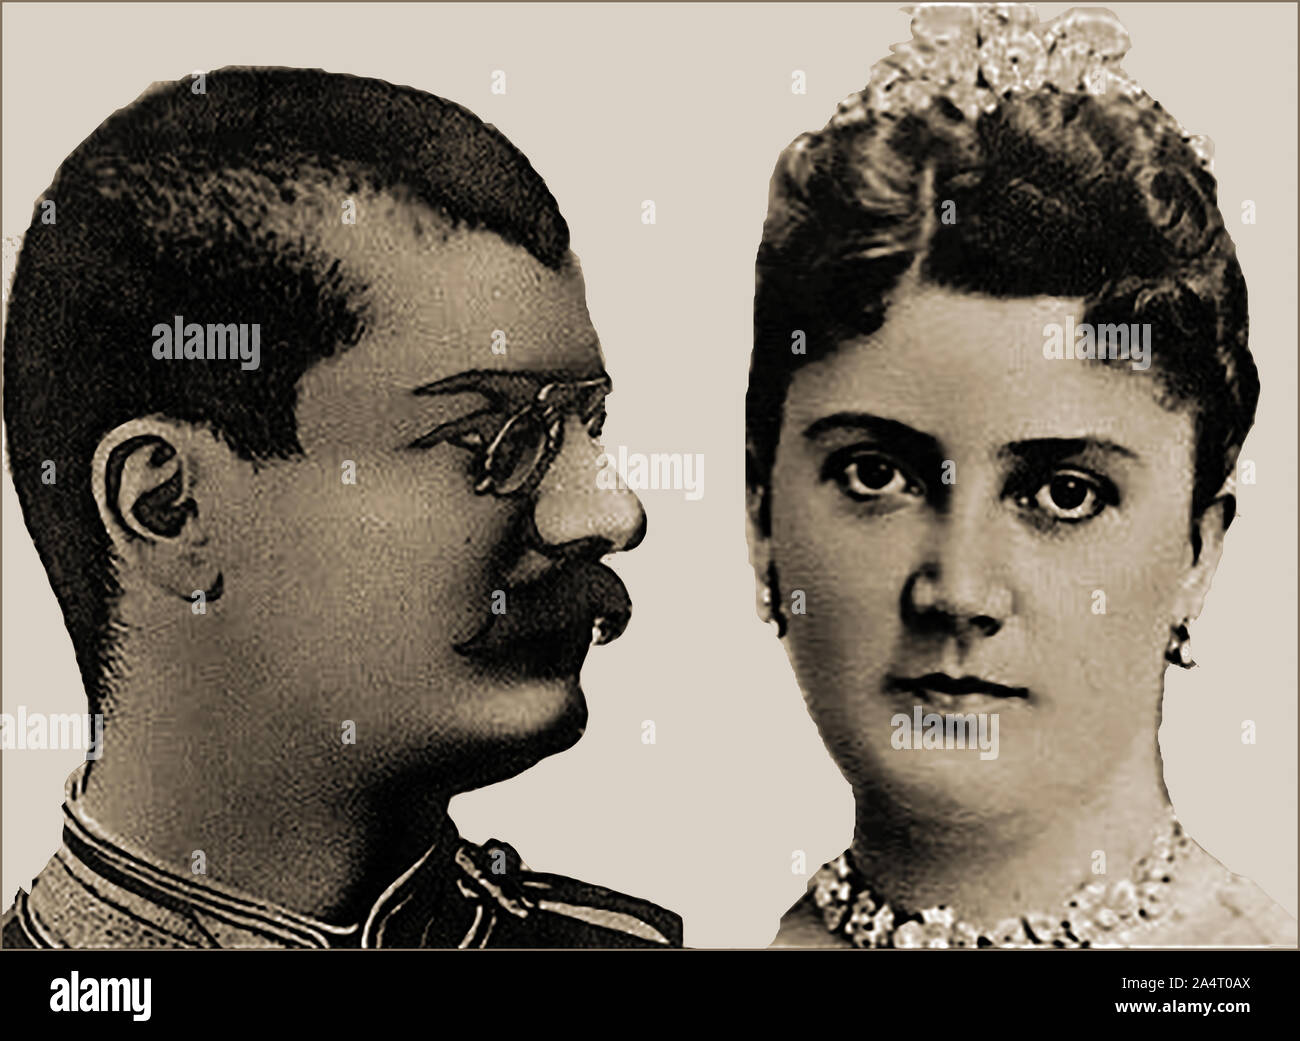 Porträts von König Alexander I (1876-1903) Aleksandar Obrenović von Serbien und seine Königin Draginja "raga" obrenović (1866-1903), die beide durch Königlichen serbischen Offiziere in der Armee, unter der Leitung von Hauptmann Dragutin Dimitrijević Apis'' im Jahr 1903 ermordet wurden. Der Geburtsname des Königin war Draginja Milićević Lunjevica und wurde vorher Svetozar Mašin verheiratet. Stockfoto